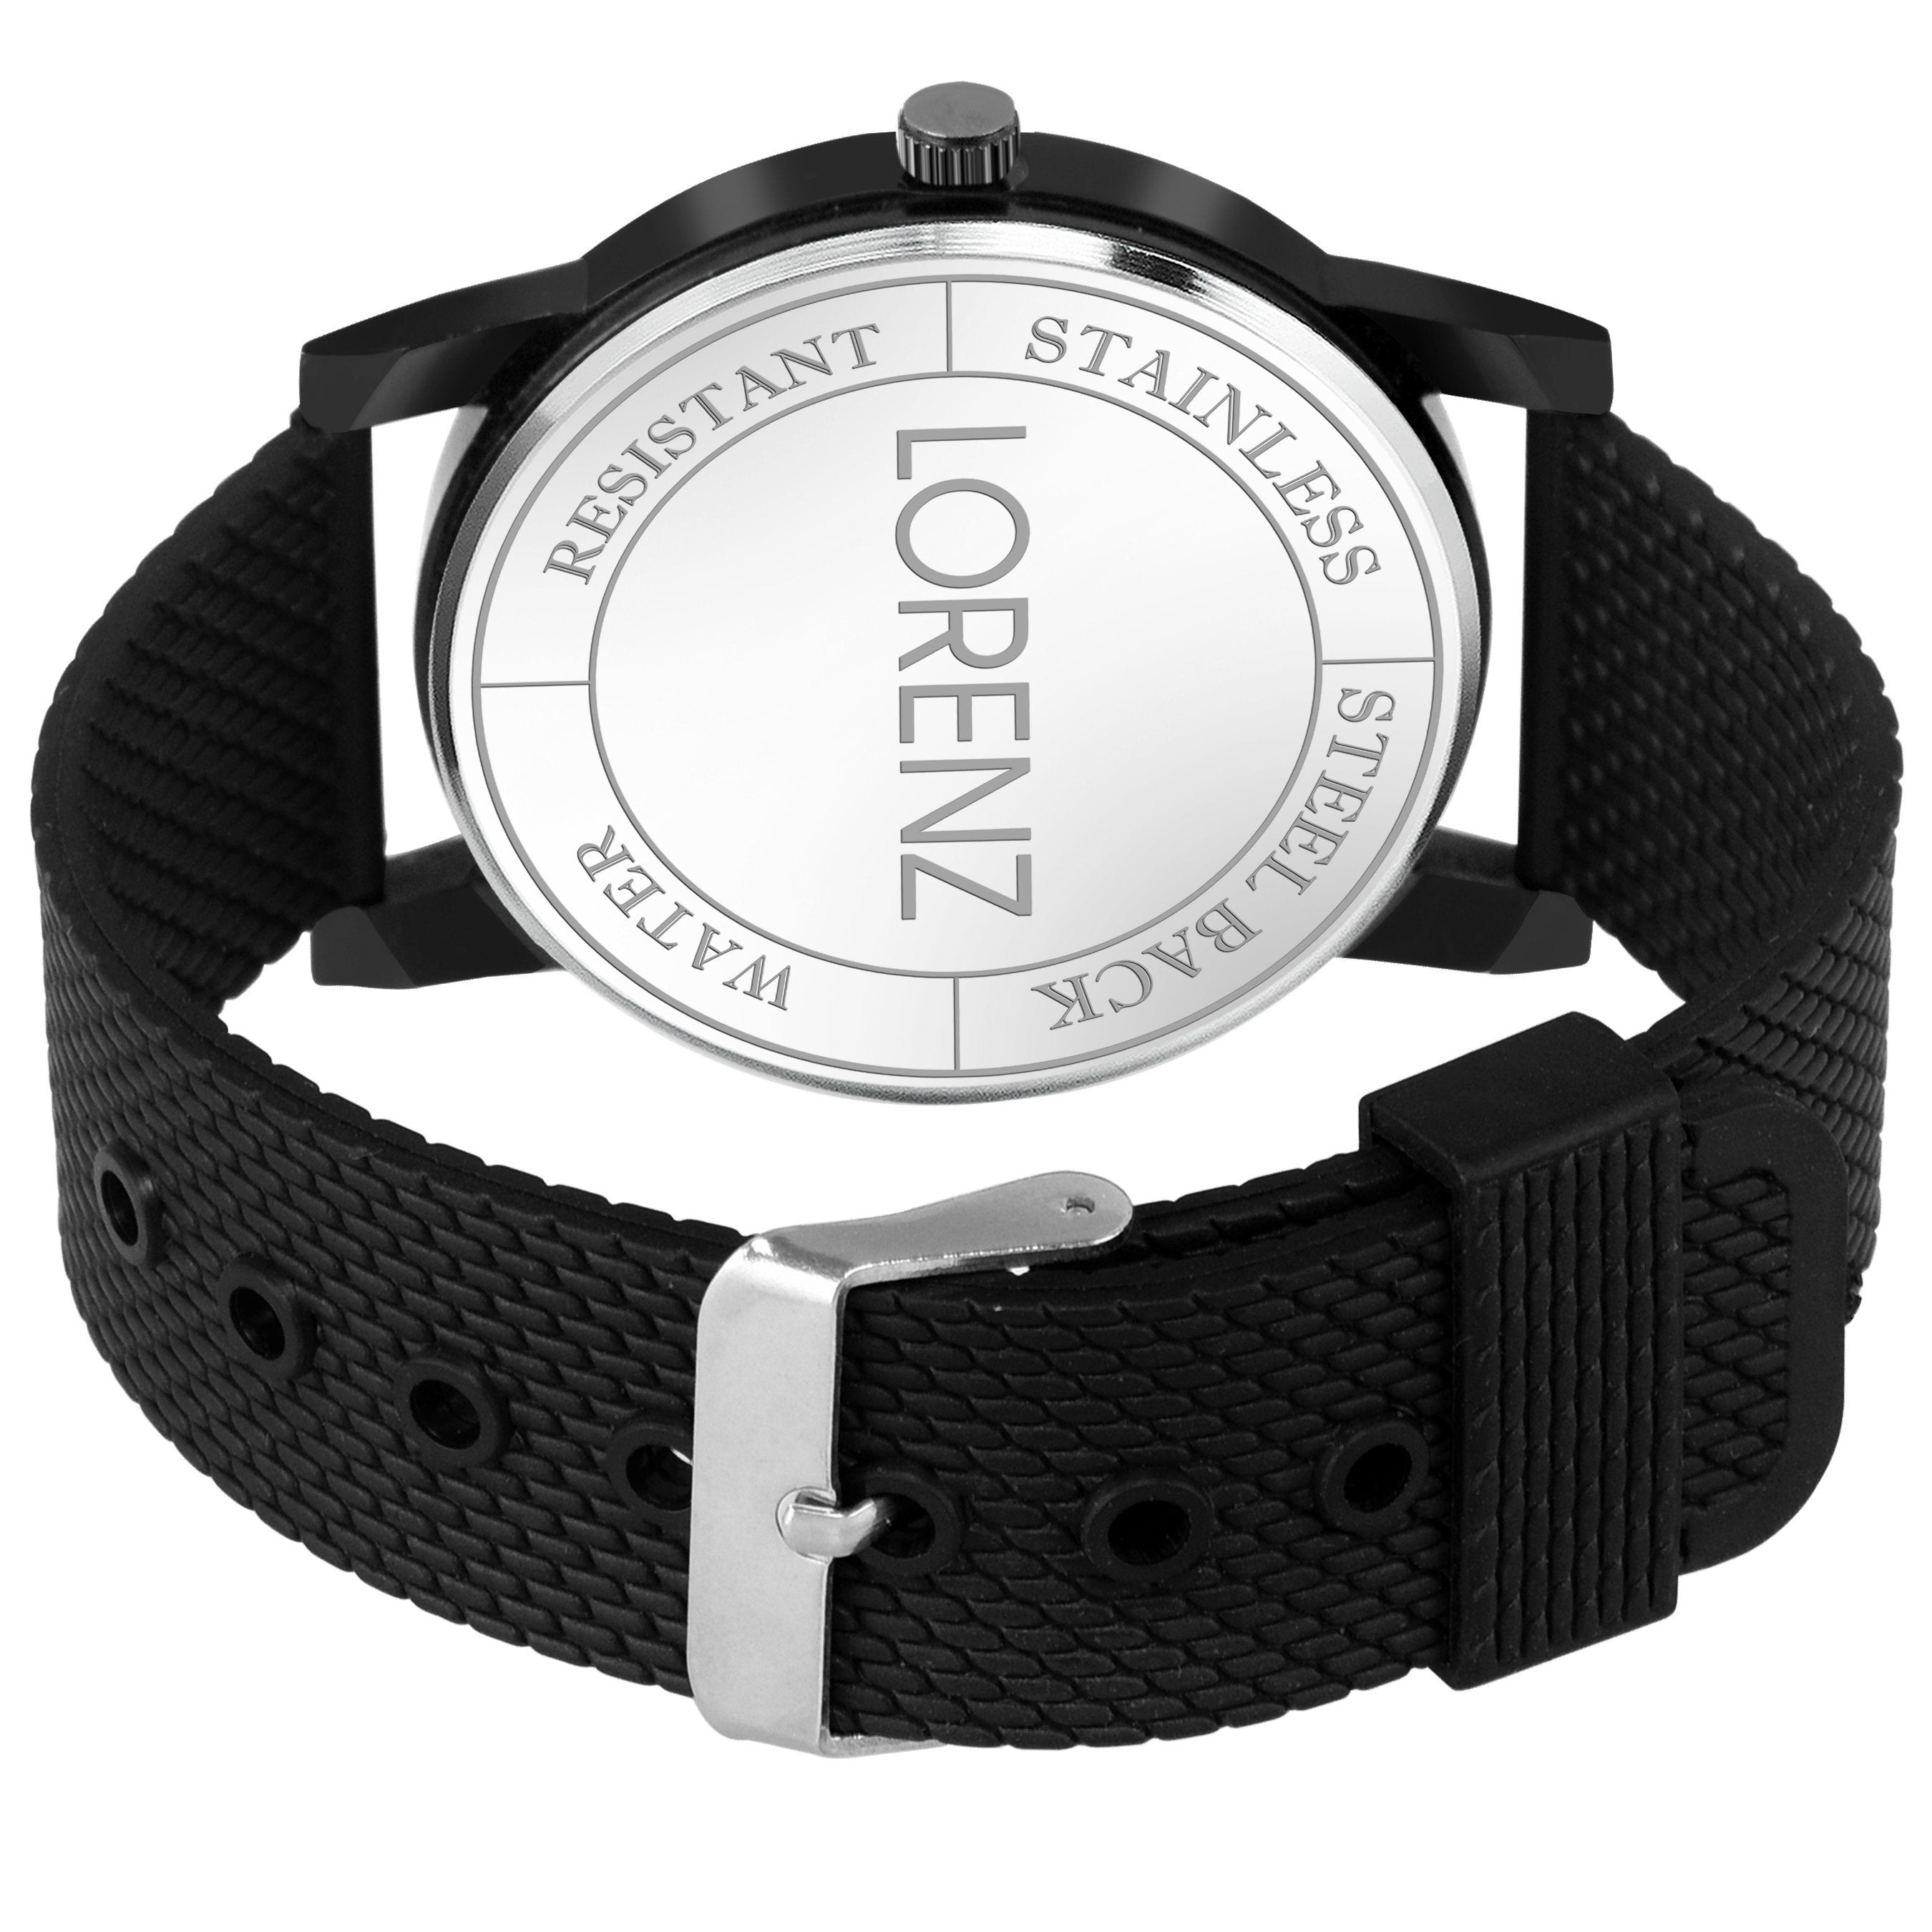 Lorenz Casual Multi-colour Dial Watch for Men & Boys- MK-2048W - Lorenz Fashion